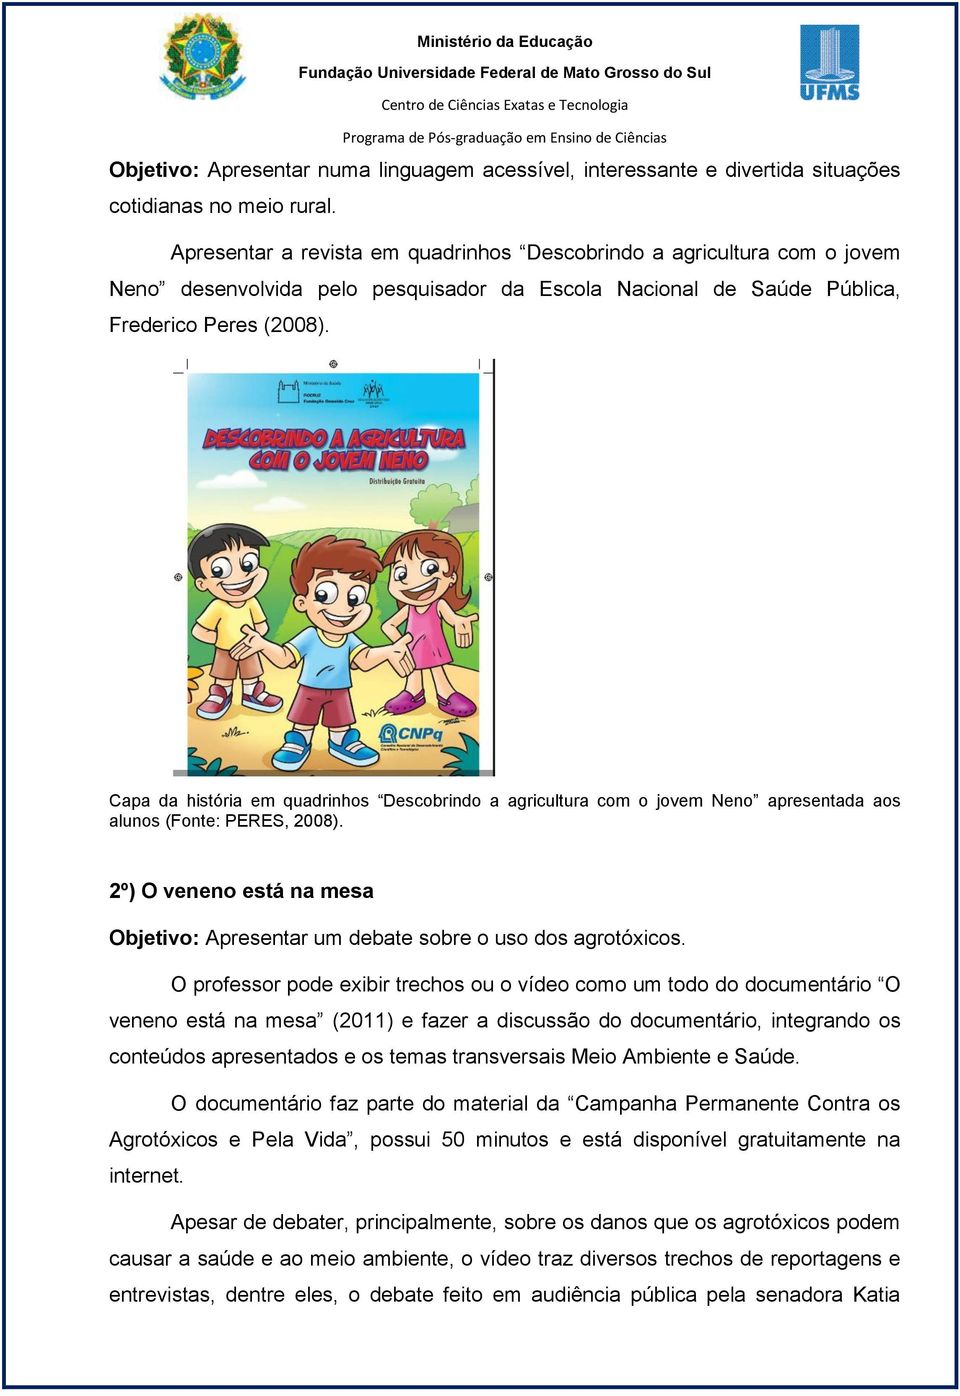 Capa da história em quadrinhos Descobrindo a agricultura com o jovem Neno apresentada aos alunos (Fonte: PERES, 2008).